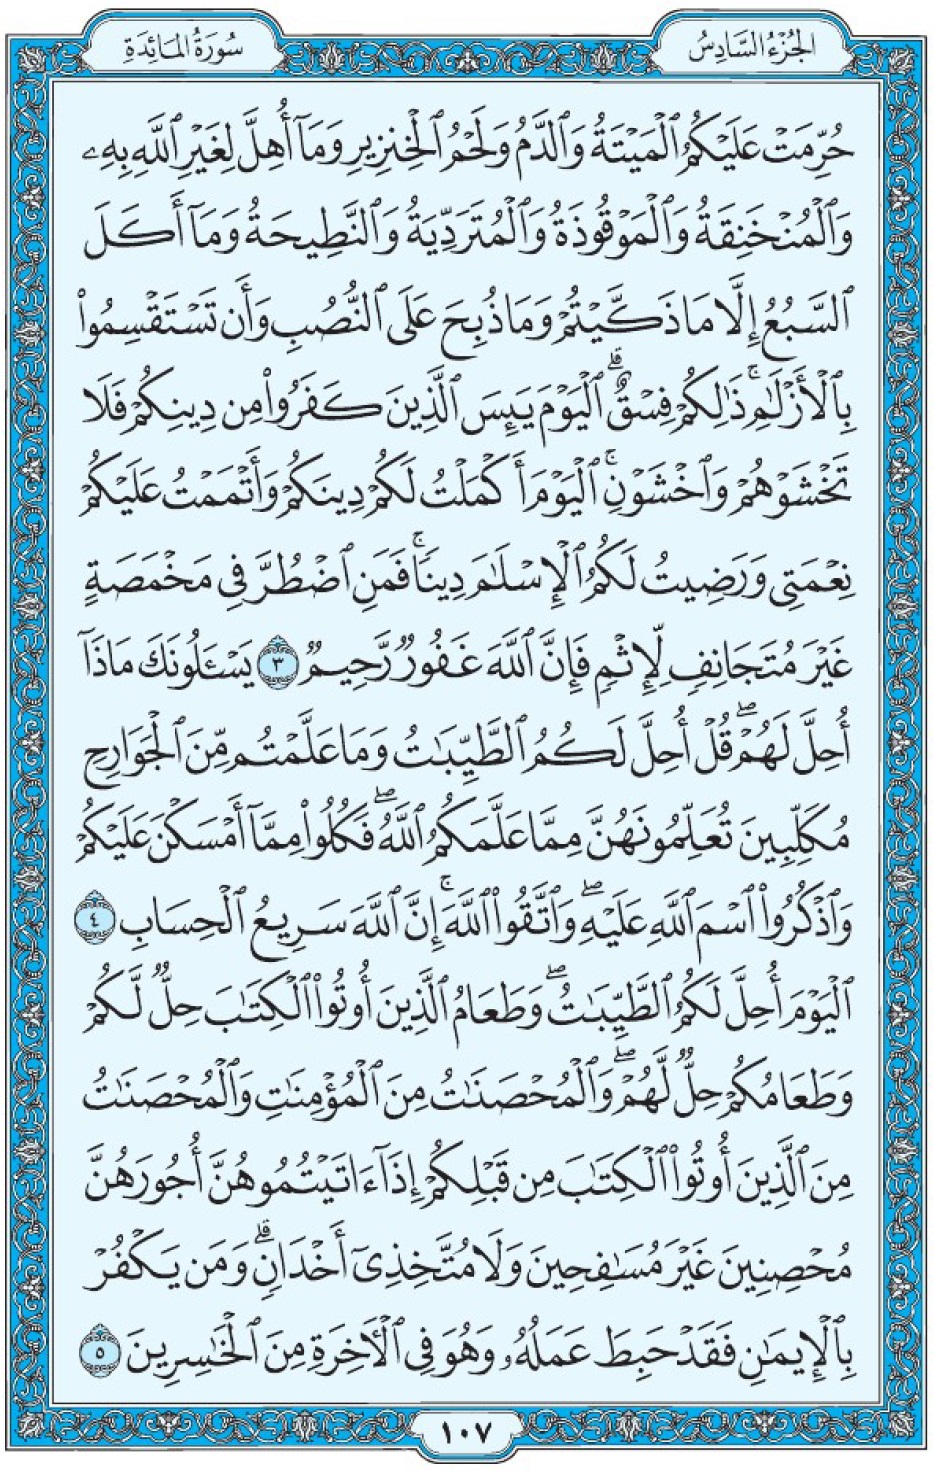 Коран Мединский мусхаф страница 107, Аль-Маида, аят 3-5